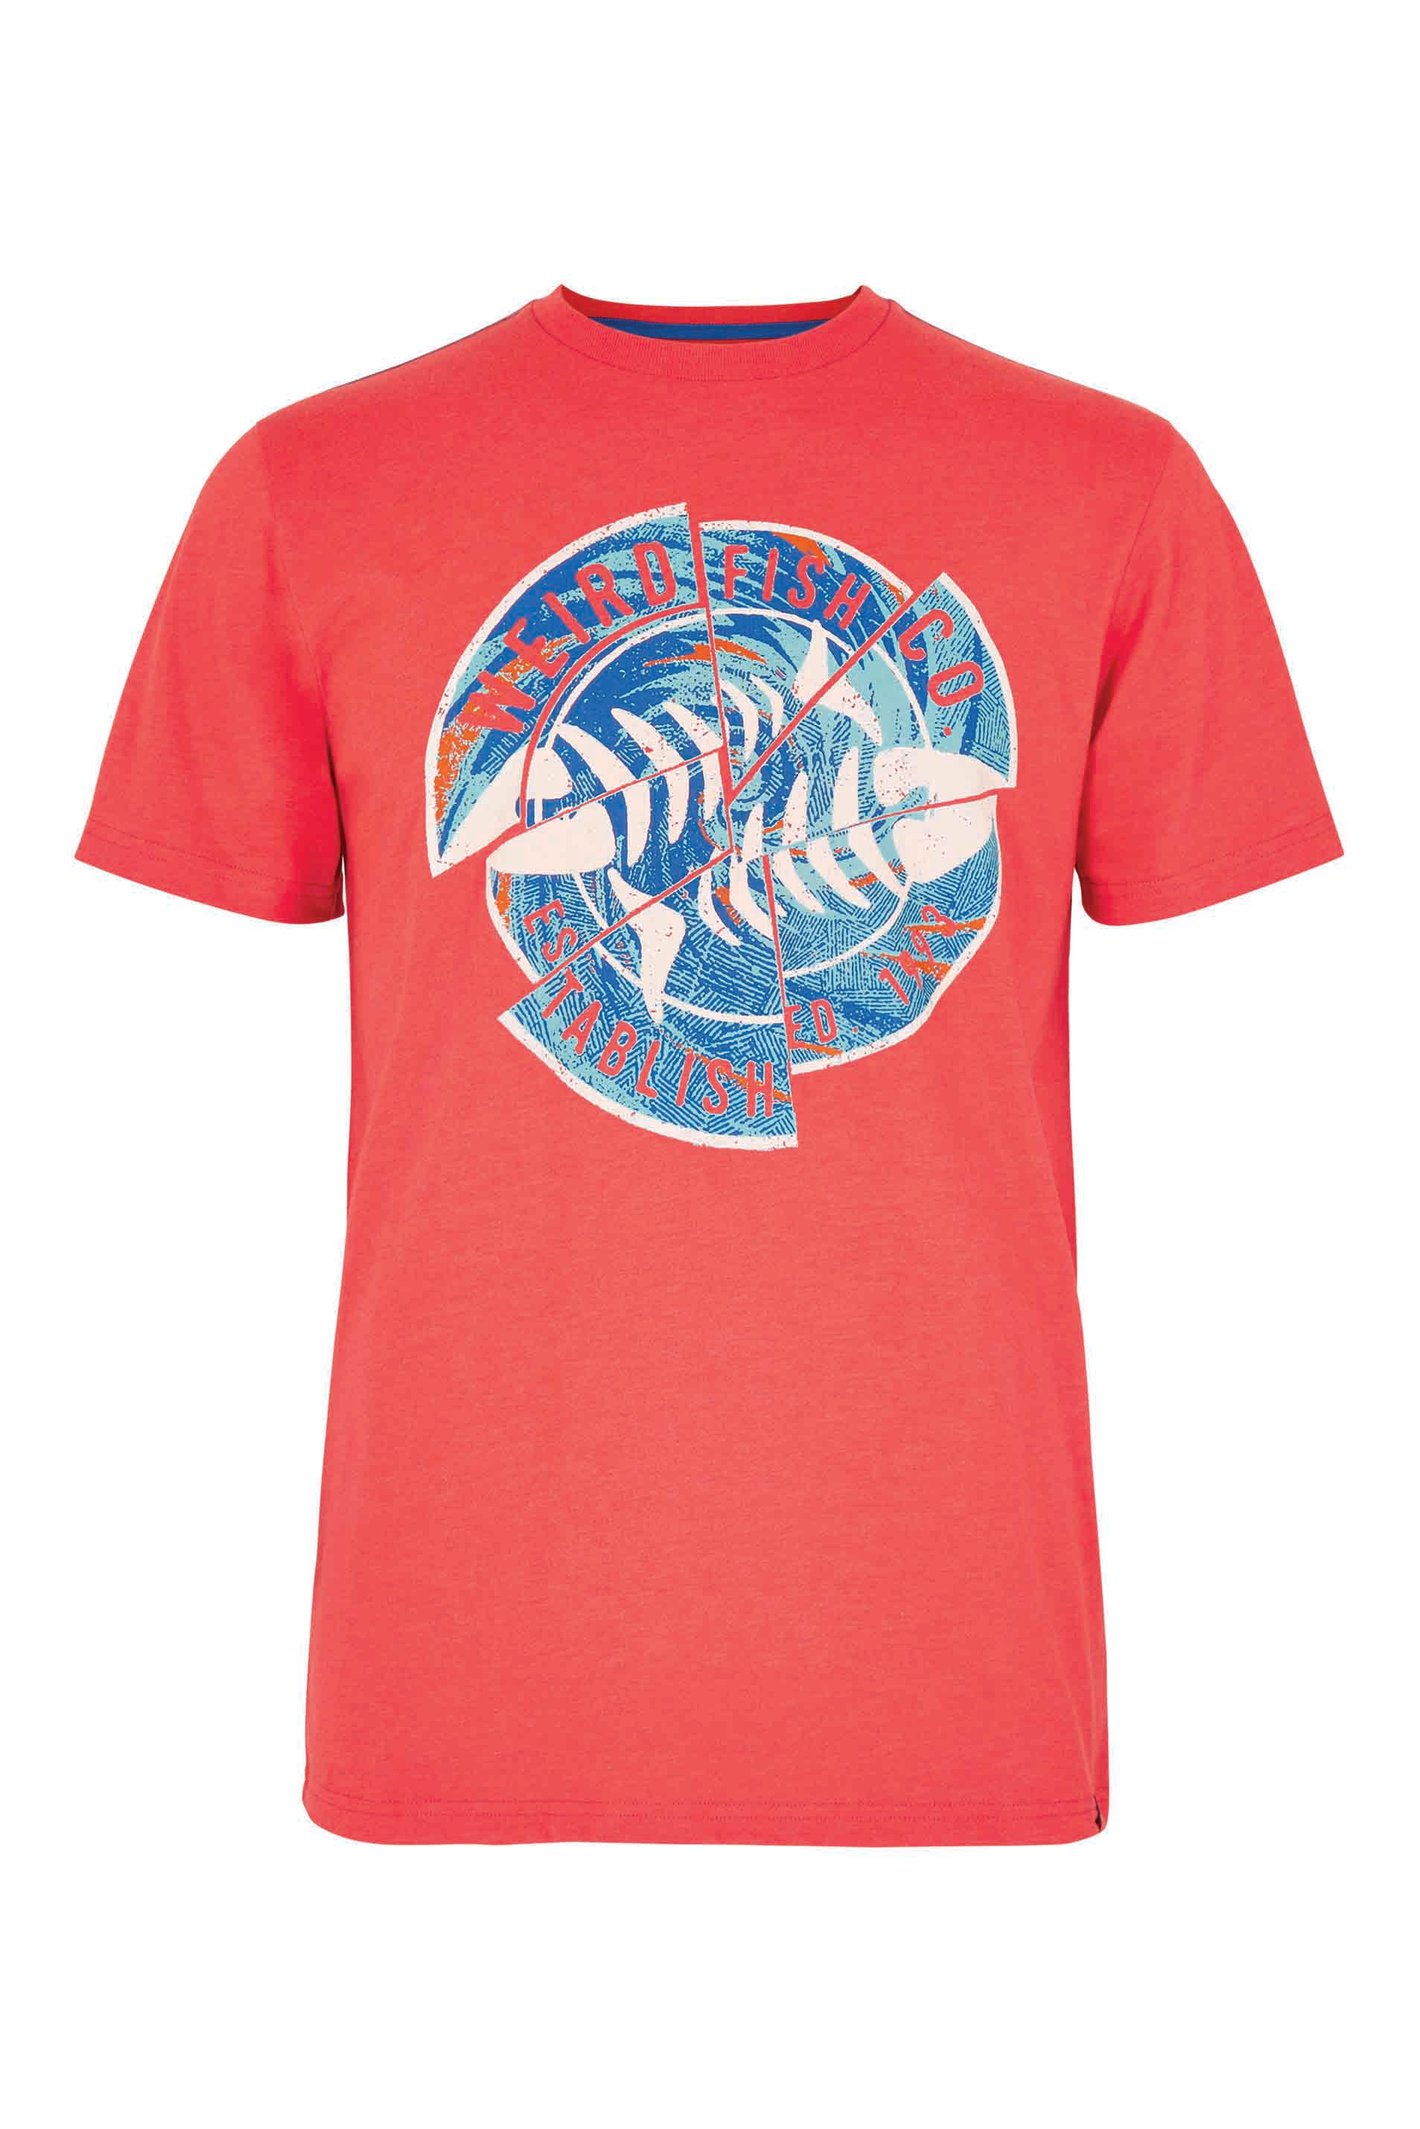 Weird Fish Vortex Eco Graphic T-Shirt Radical Red Size 3XL